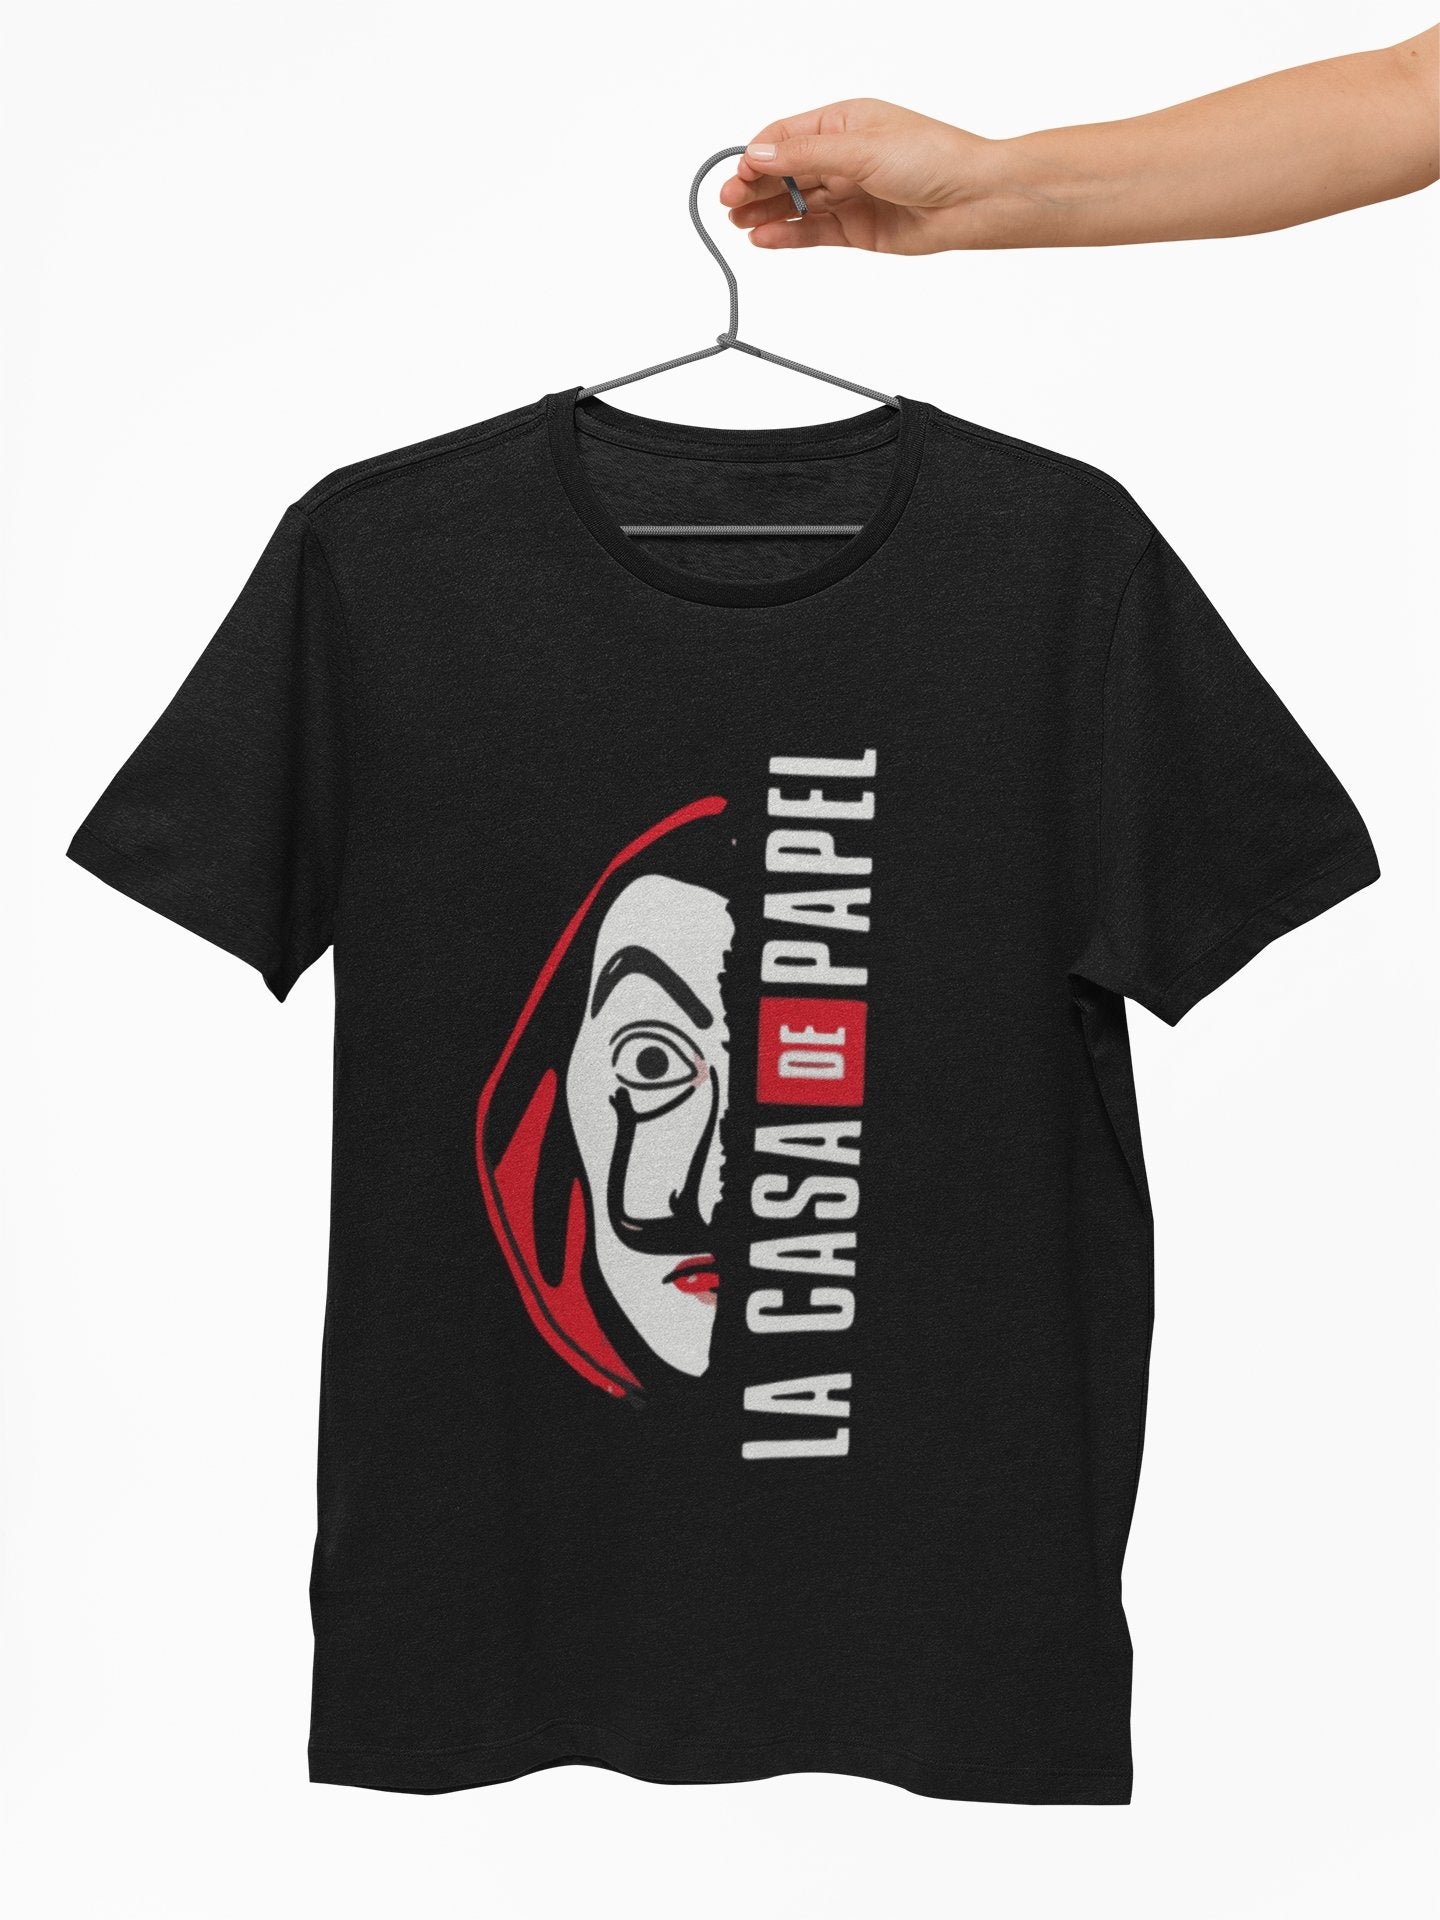 La Casa De Papel Graphic T shirt for Men - Insane Tees